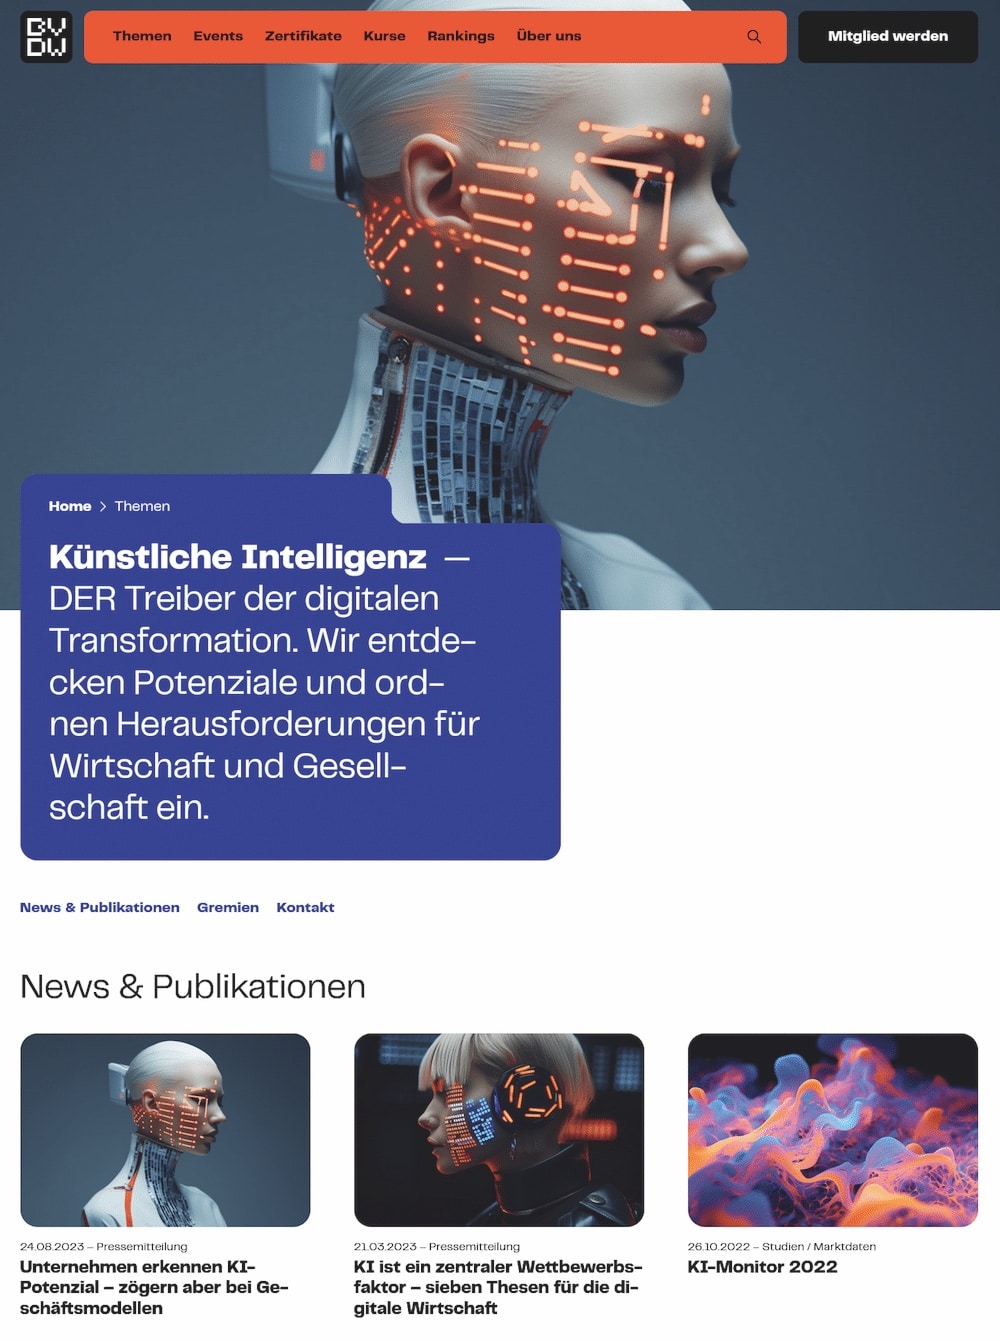 Webseitenlayout zeigt ein Banner mit einem Androiden-Gesicht und beleuchteten Linien, das für Themen rund um künstliche Intelligenz wirbt, begleitet von Textblöcken und weiteren Bildern mit futuristischen Motiven.